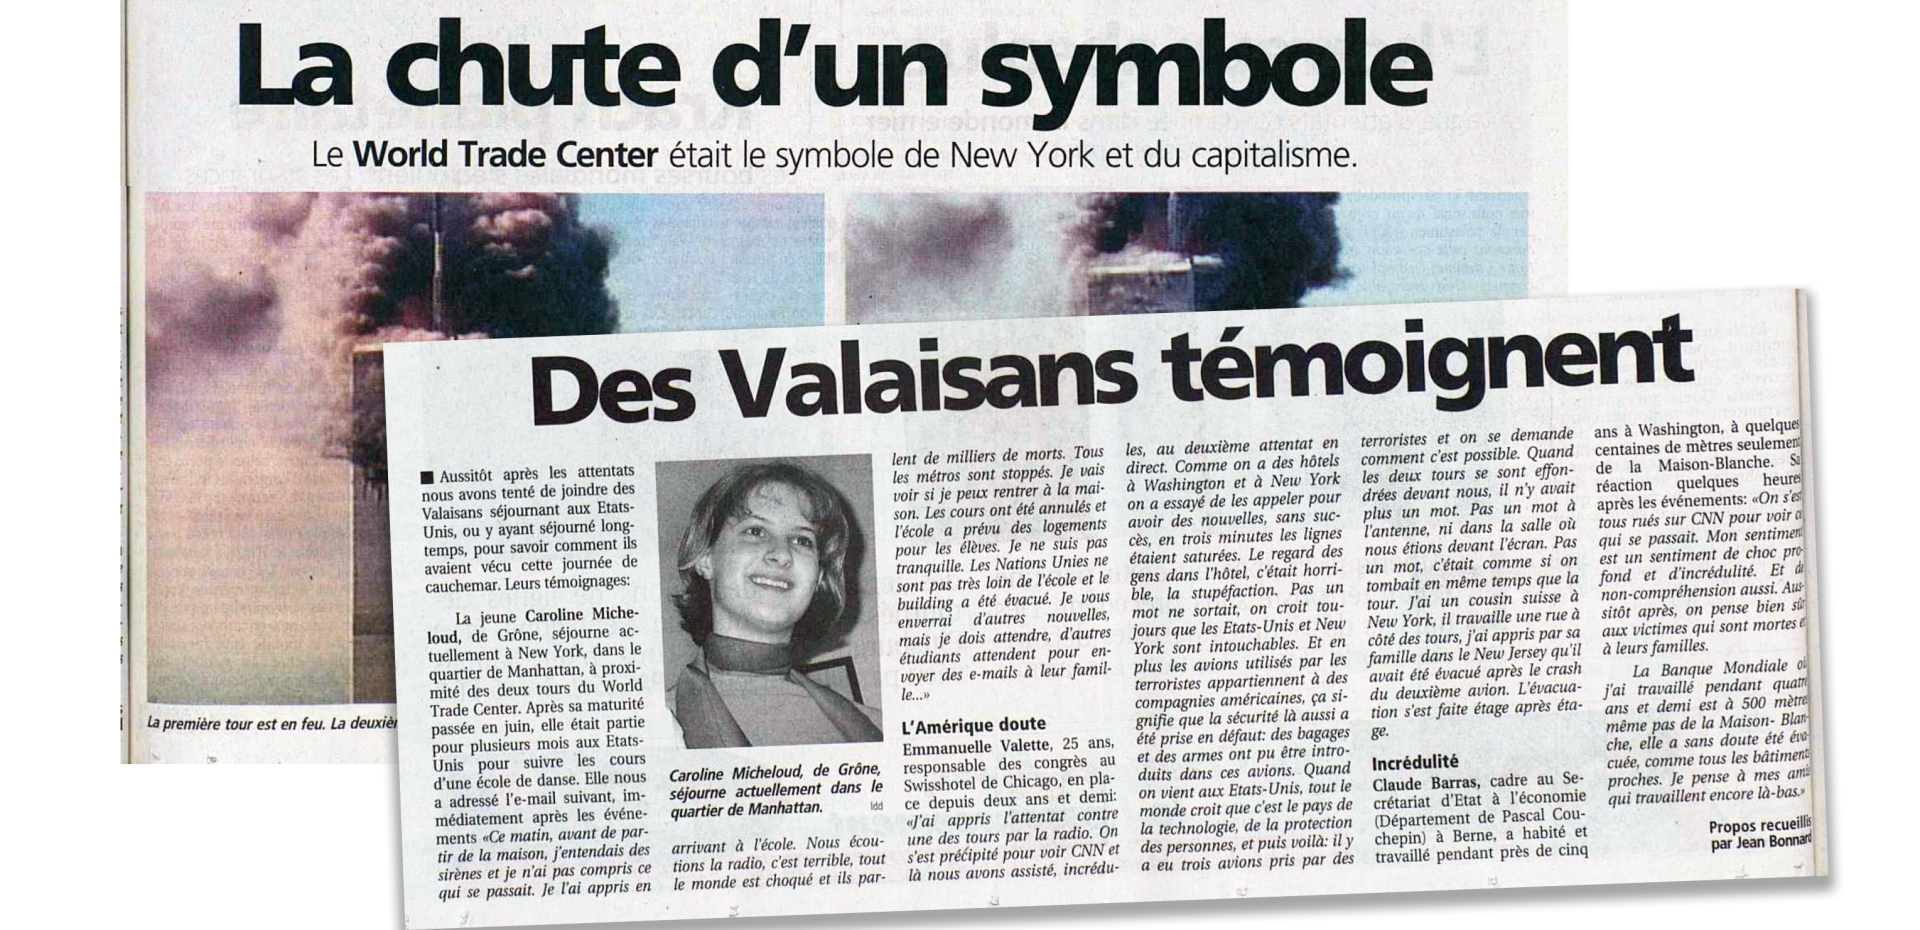 Il y a vingt ans, Caroline Micheloud avait déjà témoigné dans «Le Nouvelliste», au moment des attentats.